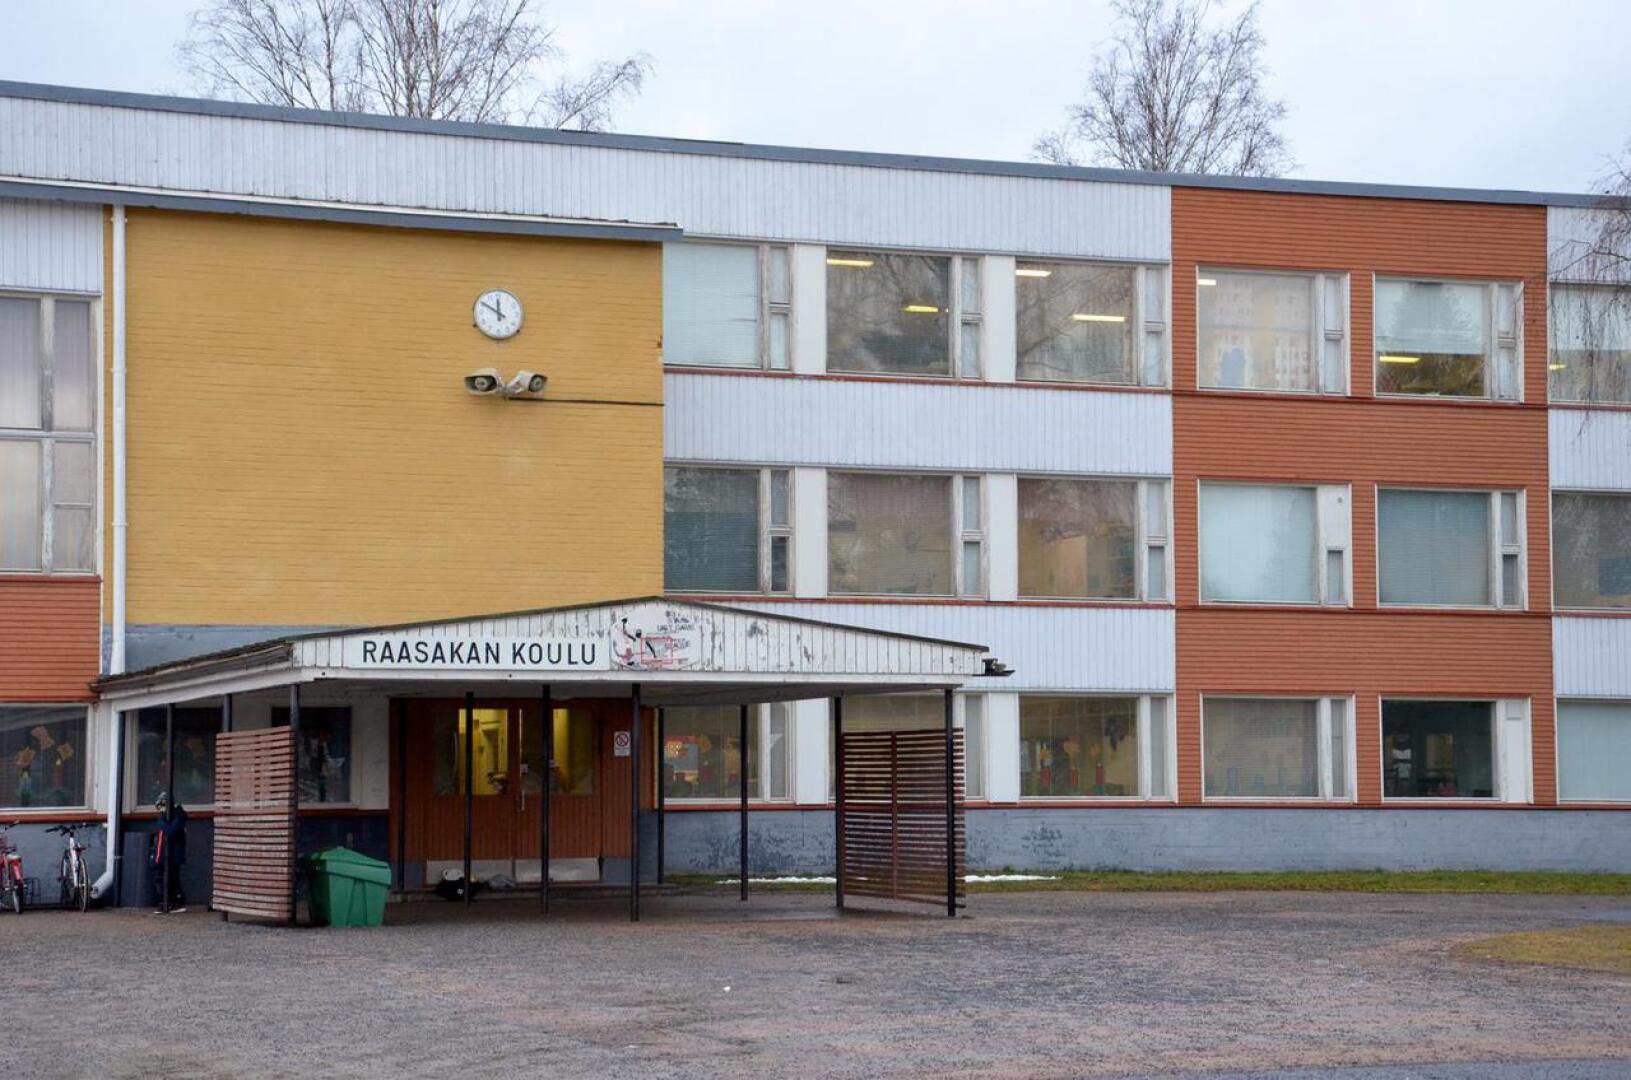 Vuonna 1960 valmistuneessa Raasakan koulussa on alakoululaisia kuluvana lukuvuotena 112 ja esikoululaisia 26. 